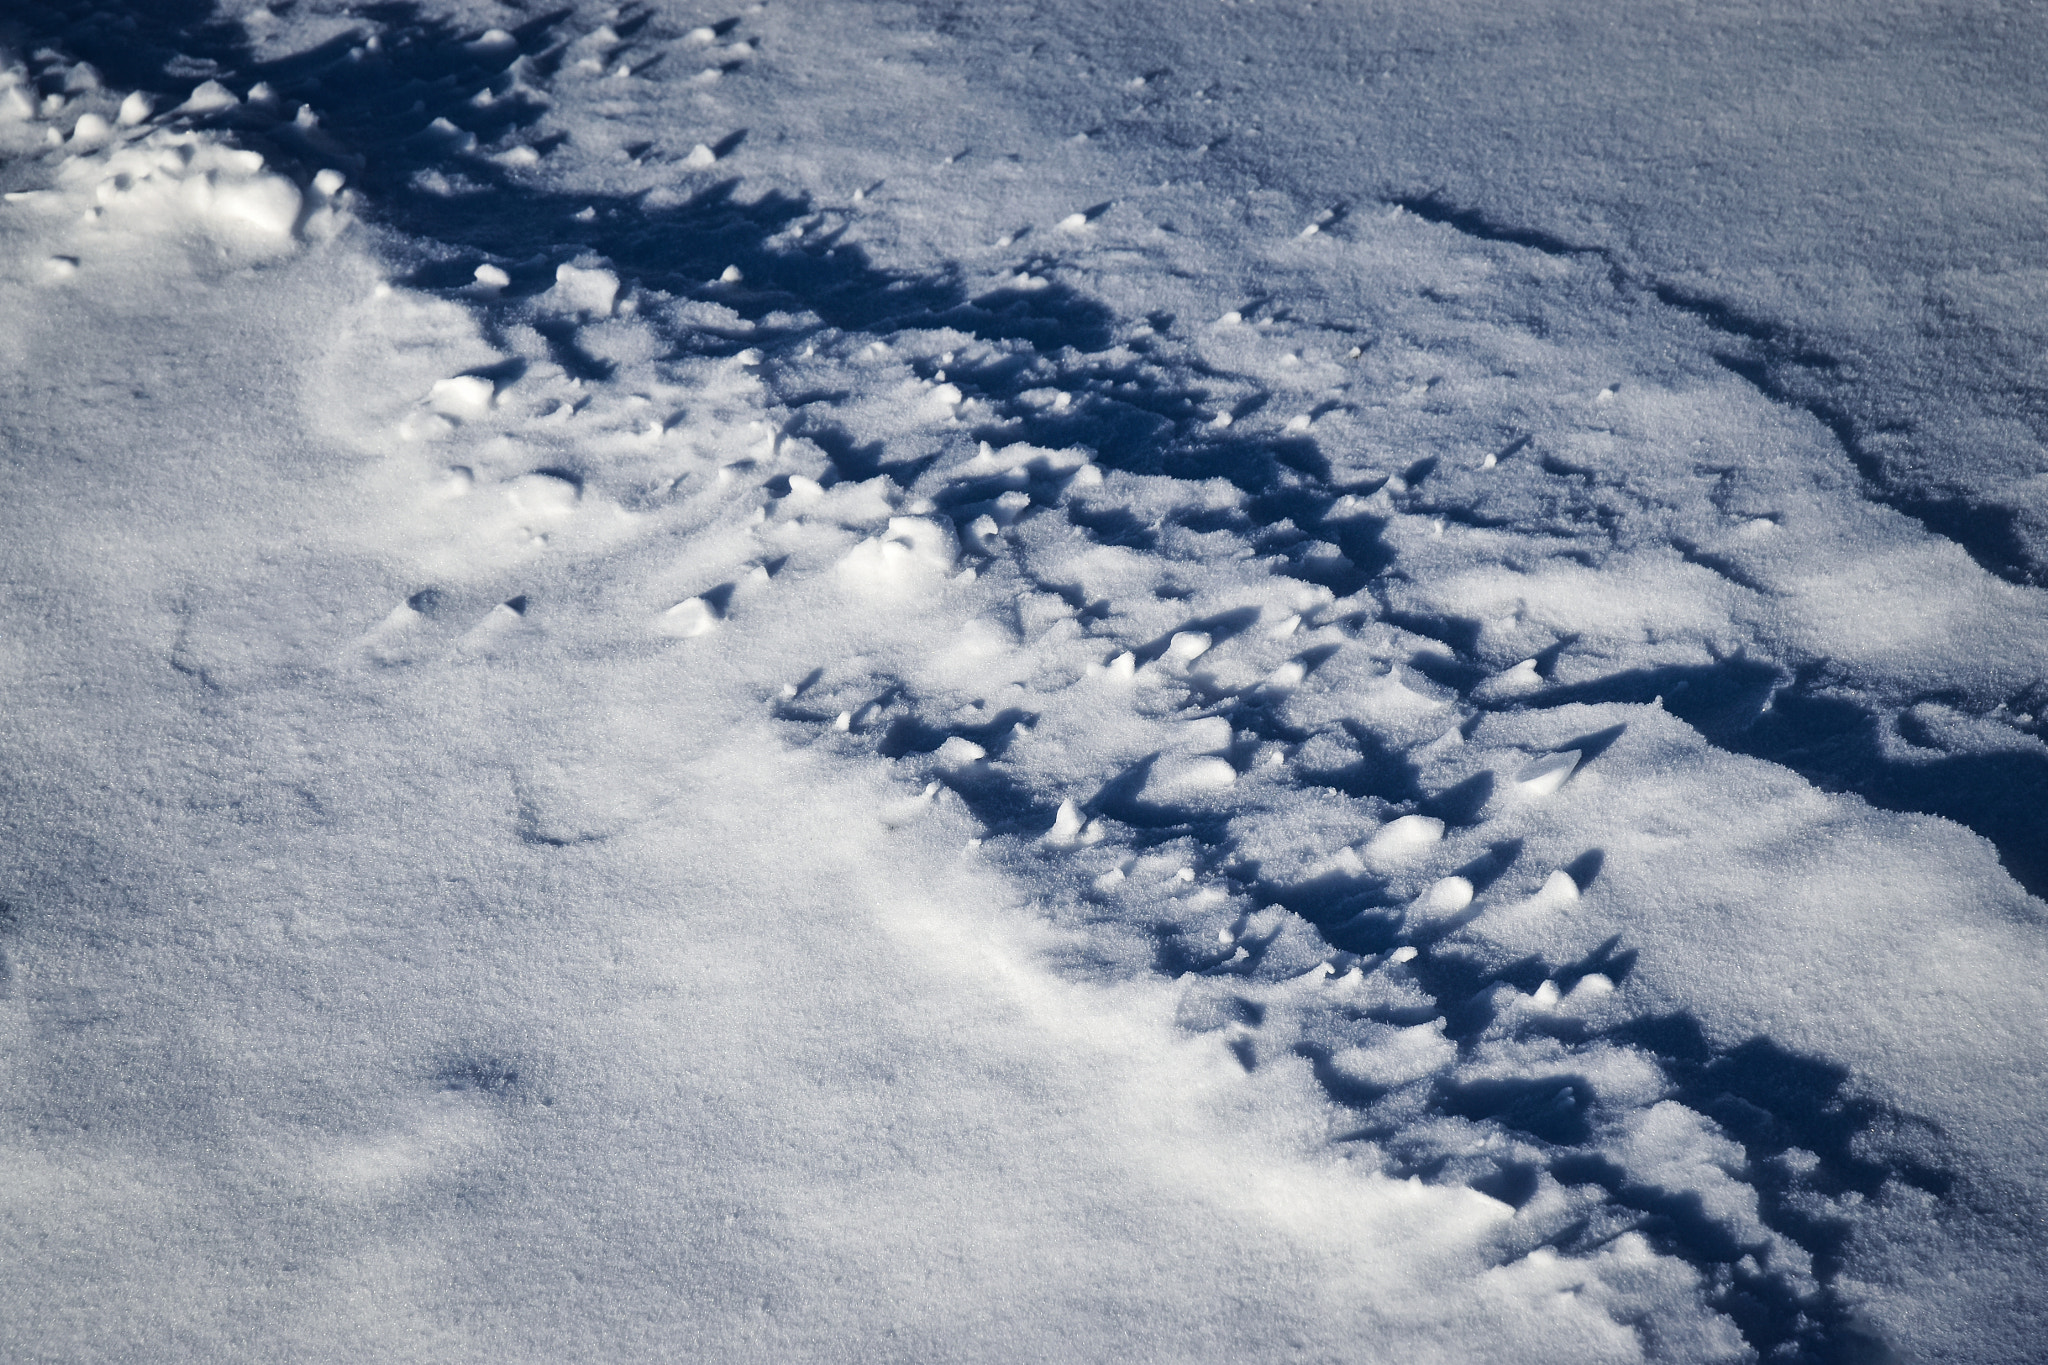 Nikon D5500 sample photo. Shadows on the snow field photography